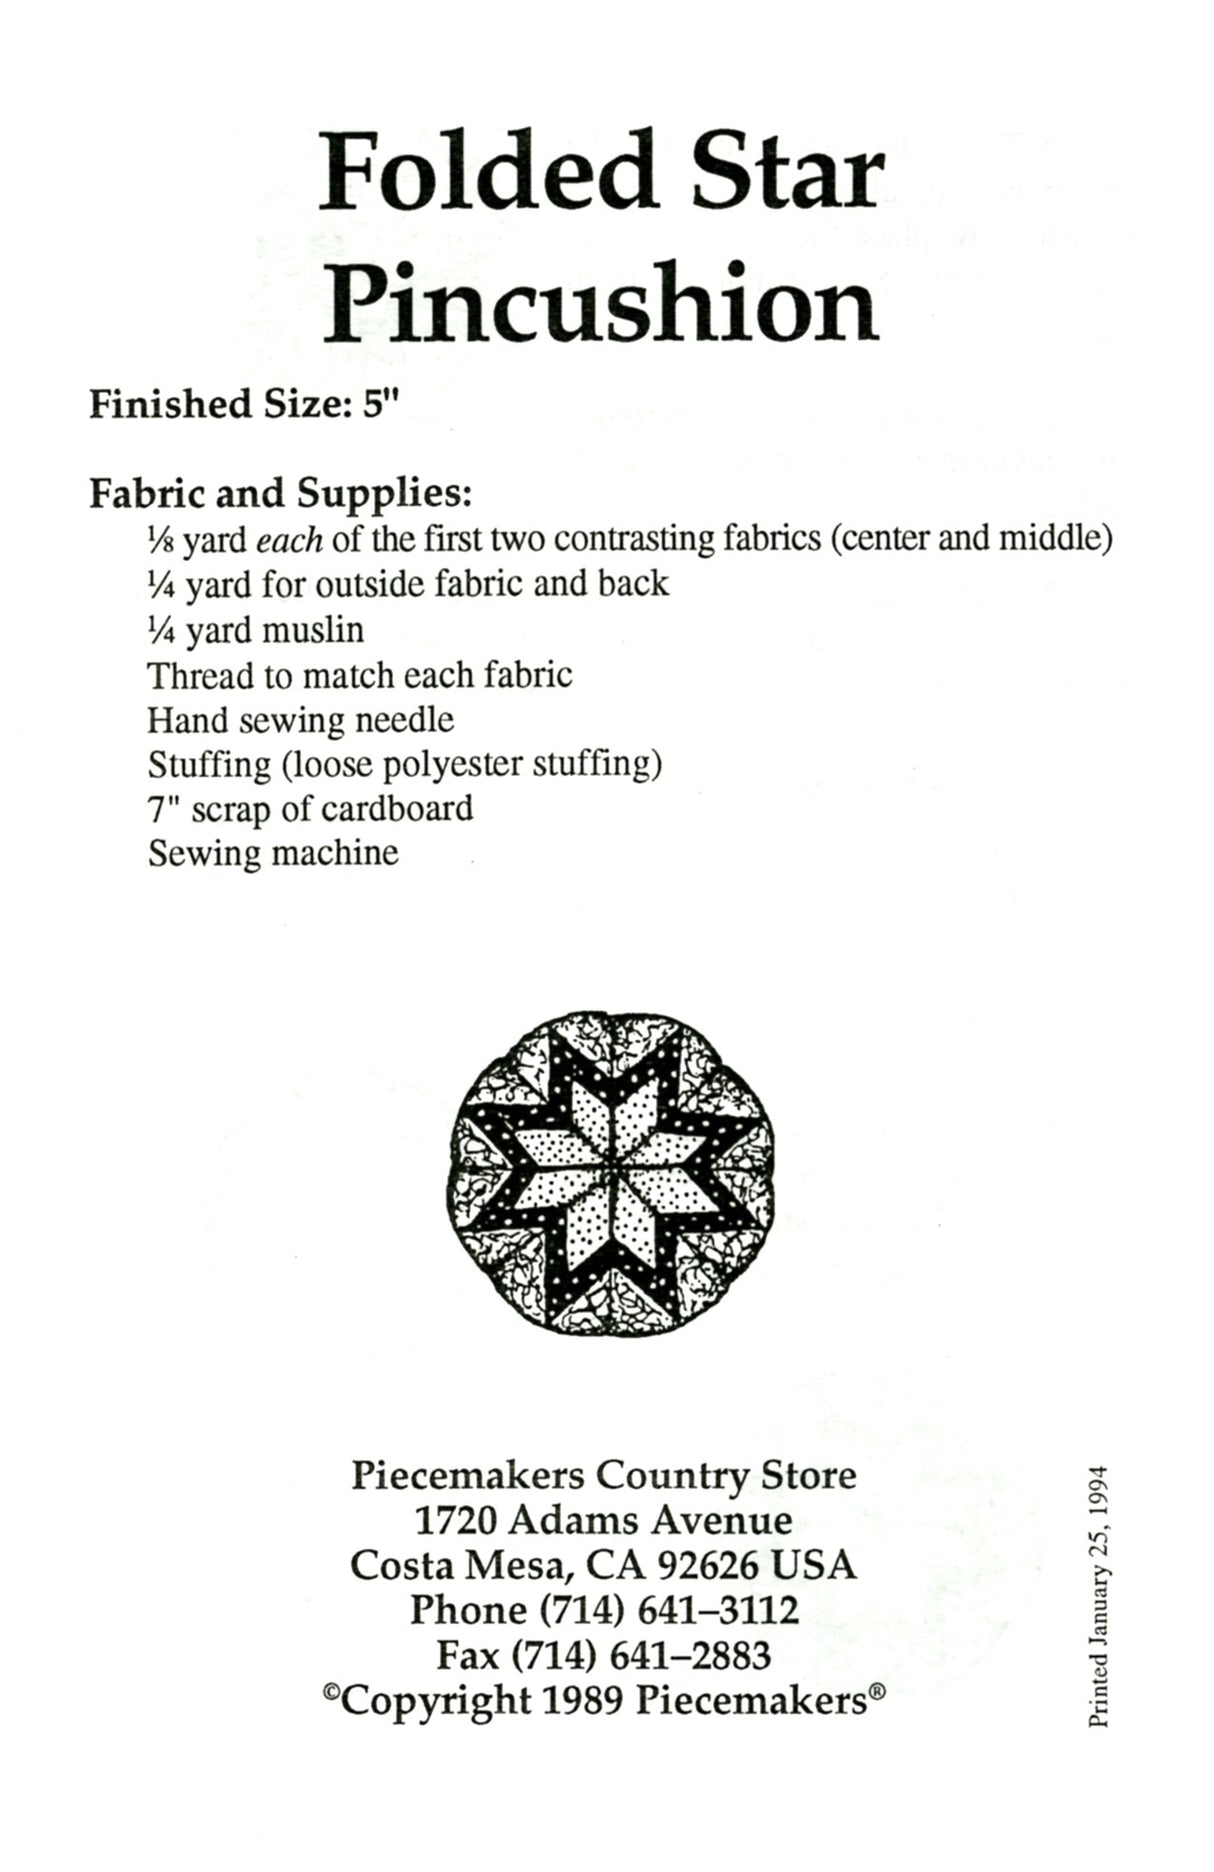 Folded Star Pincushion